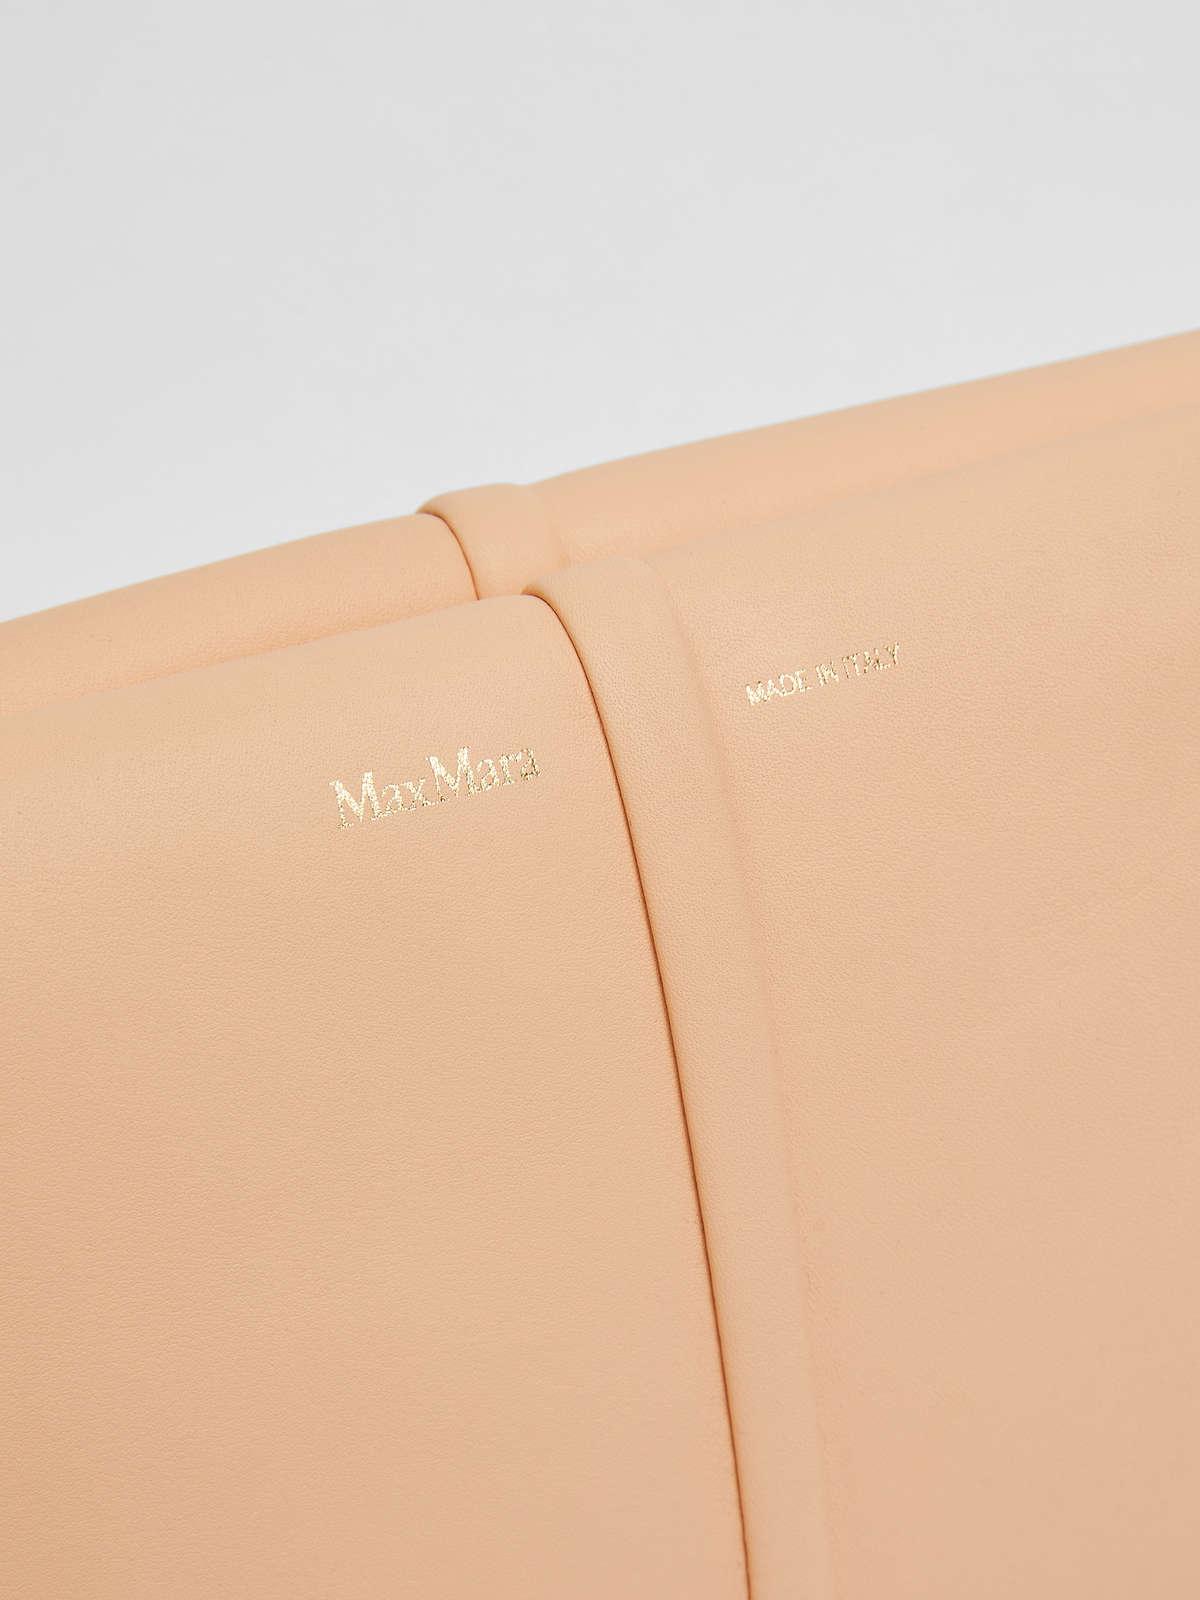 Womens Max Mara Handbags | Leather Clutch Bag Peach